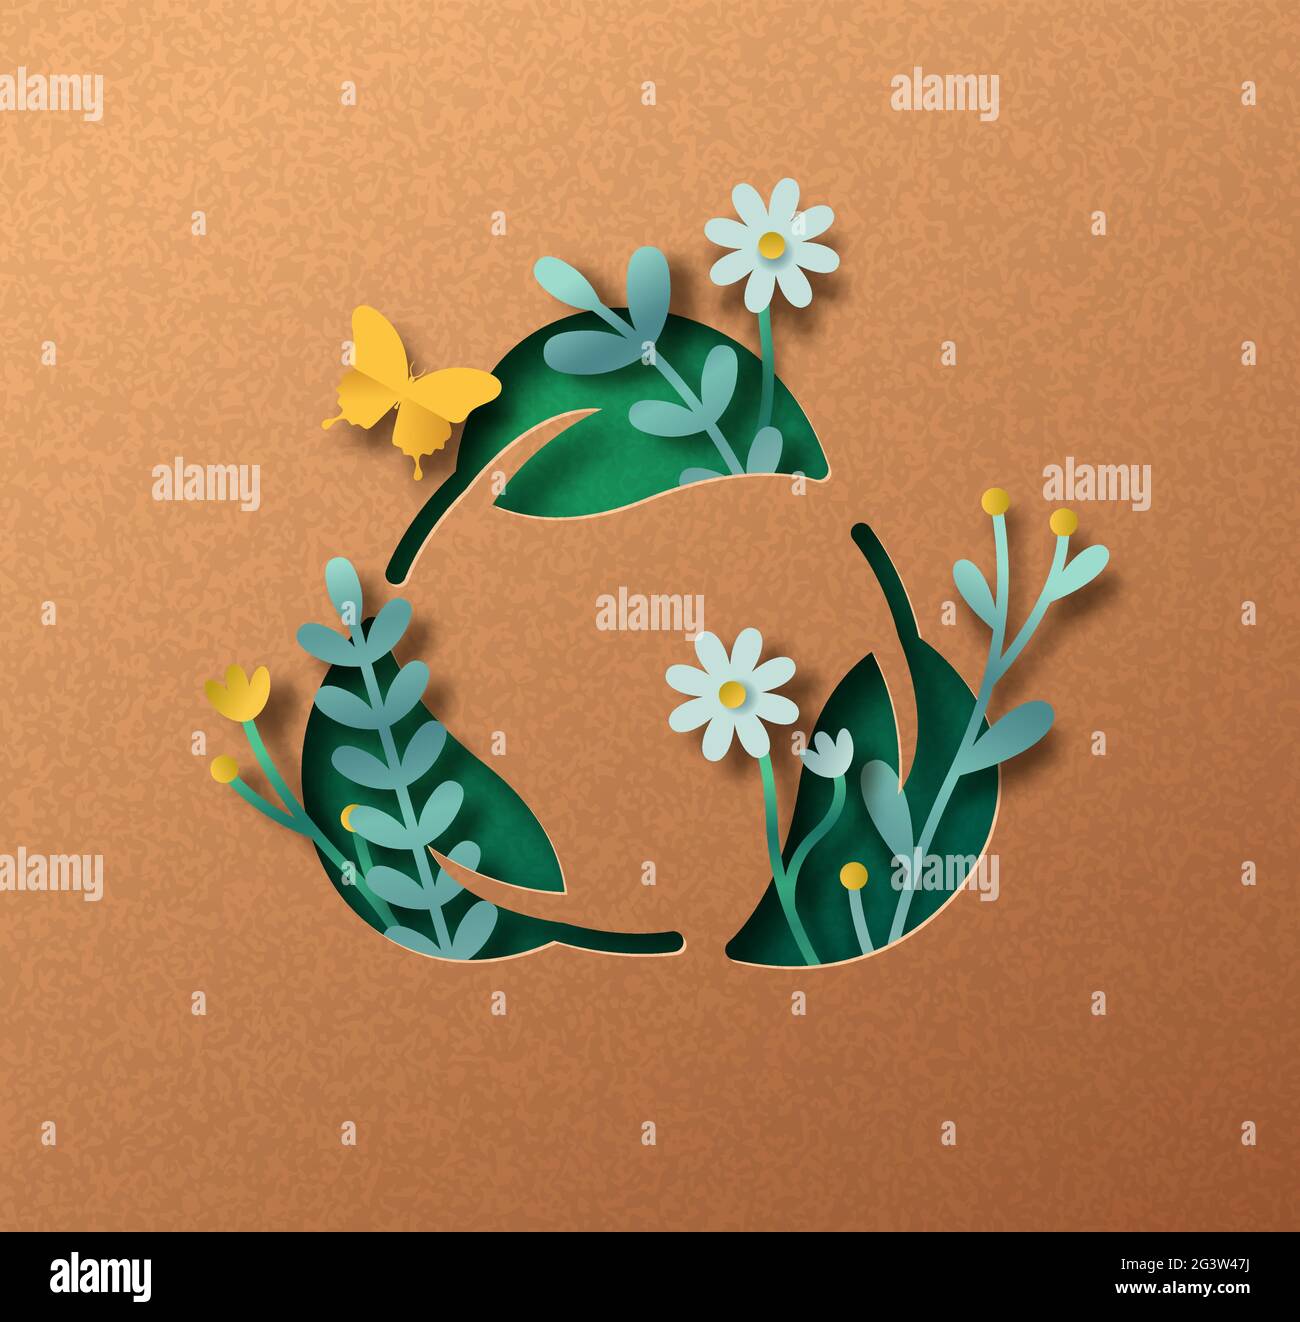 Biologisch abbaubare Blatt Zeichen papercut Illustration Konzept mit grünen Pflanzenblätter wächst im Inneren. 3D-Recycling Liebe Ausschnitt Handwerk Design aus recyceltem Papier Stock Vektor